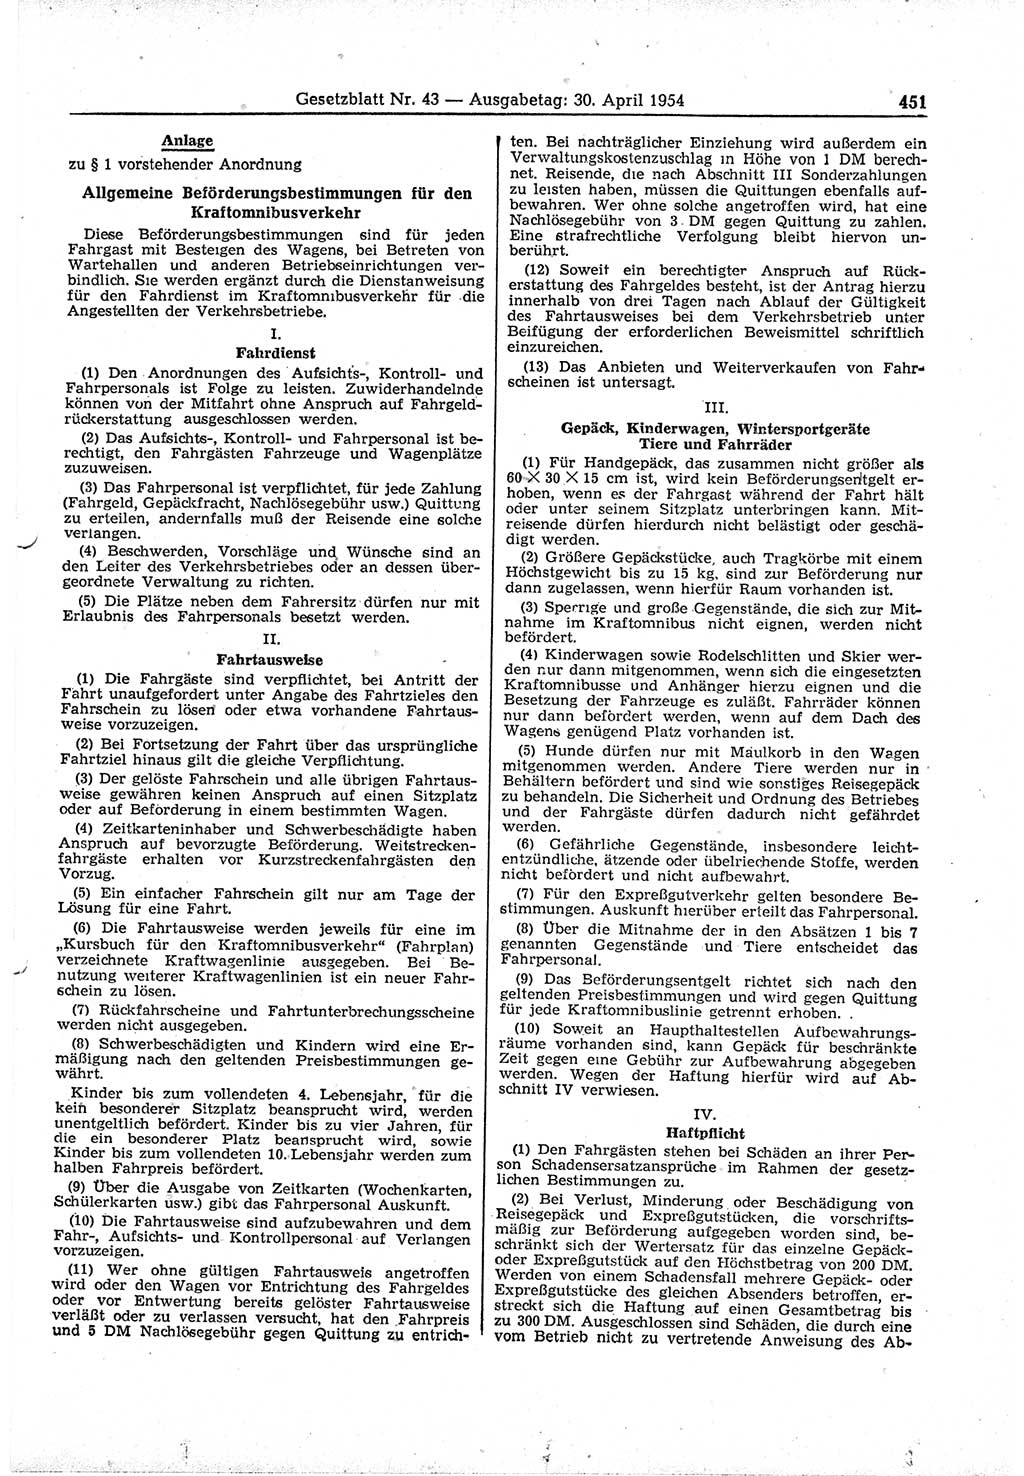 Gesetzblatt (GBl.) der Deutschen Demokratischen Republik (DDR) 1954, Seite 451 (GBl. DDR 1954, S. 451)